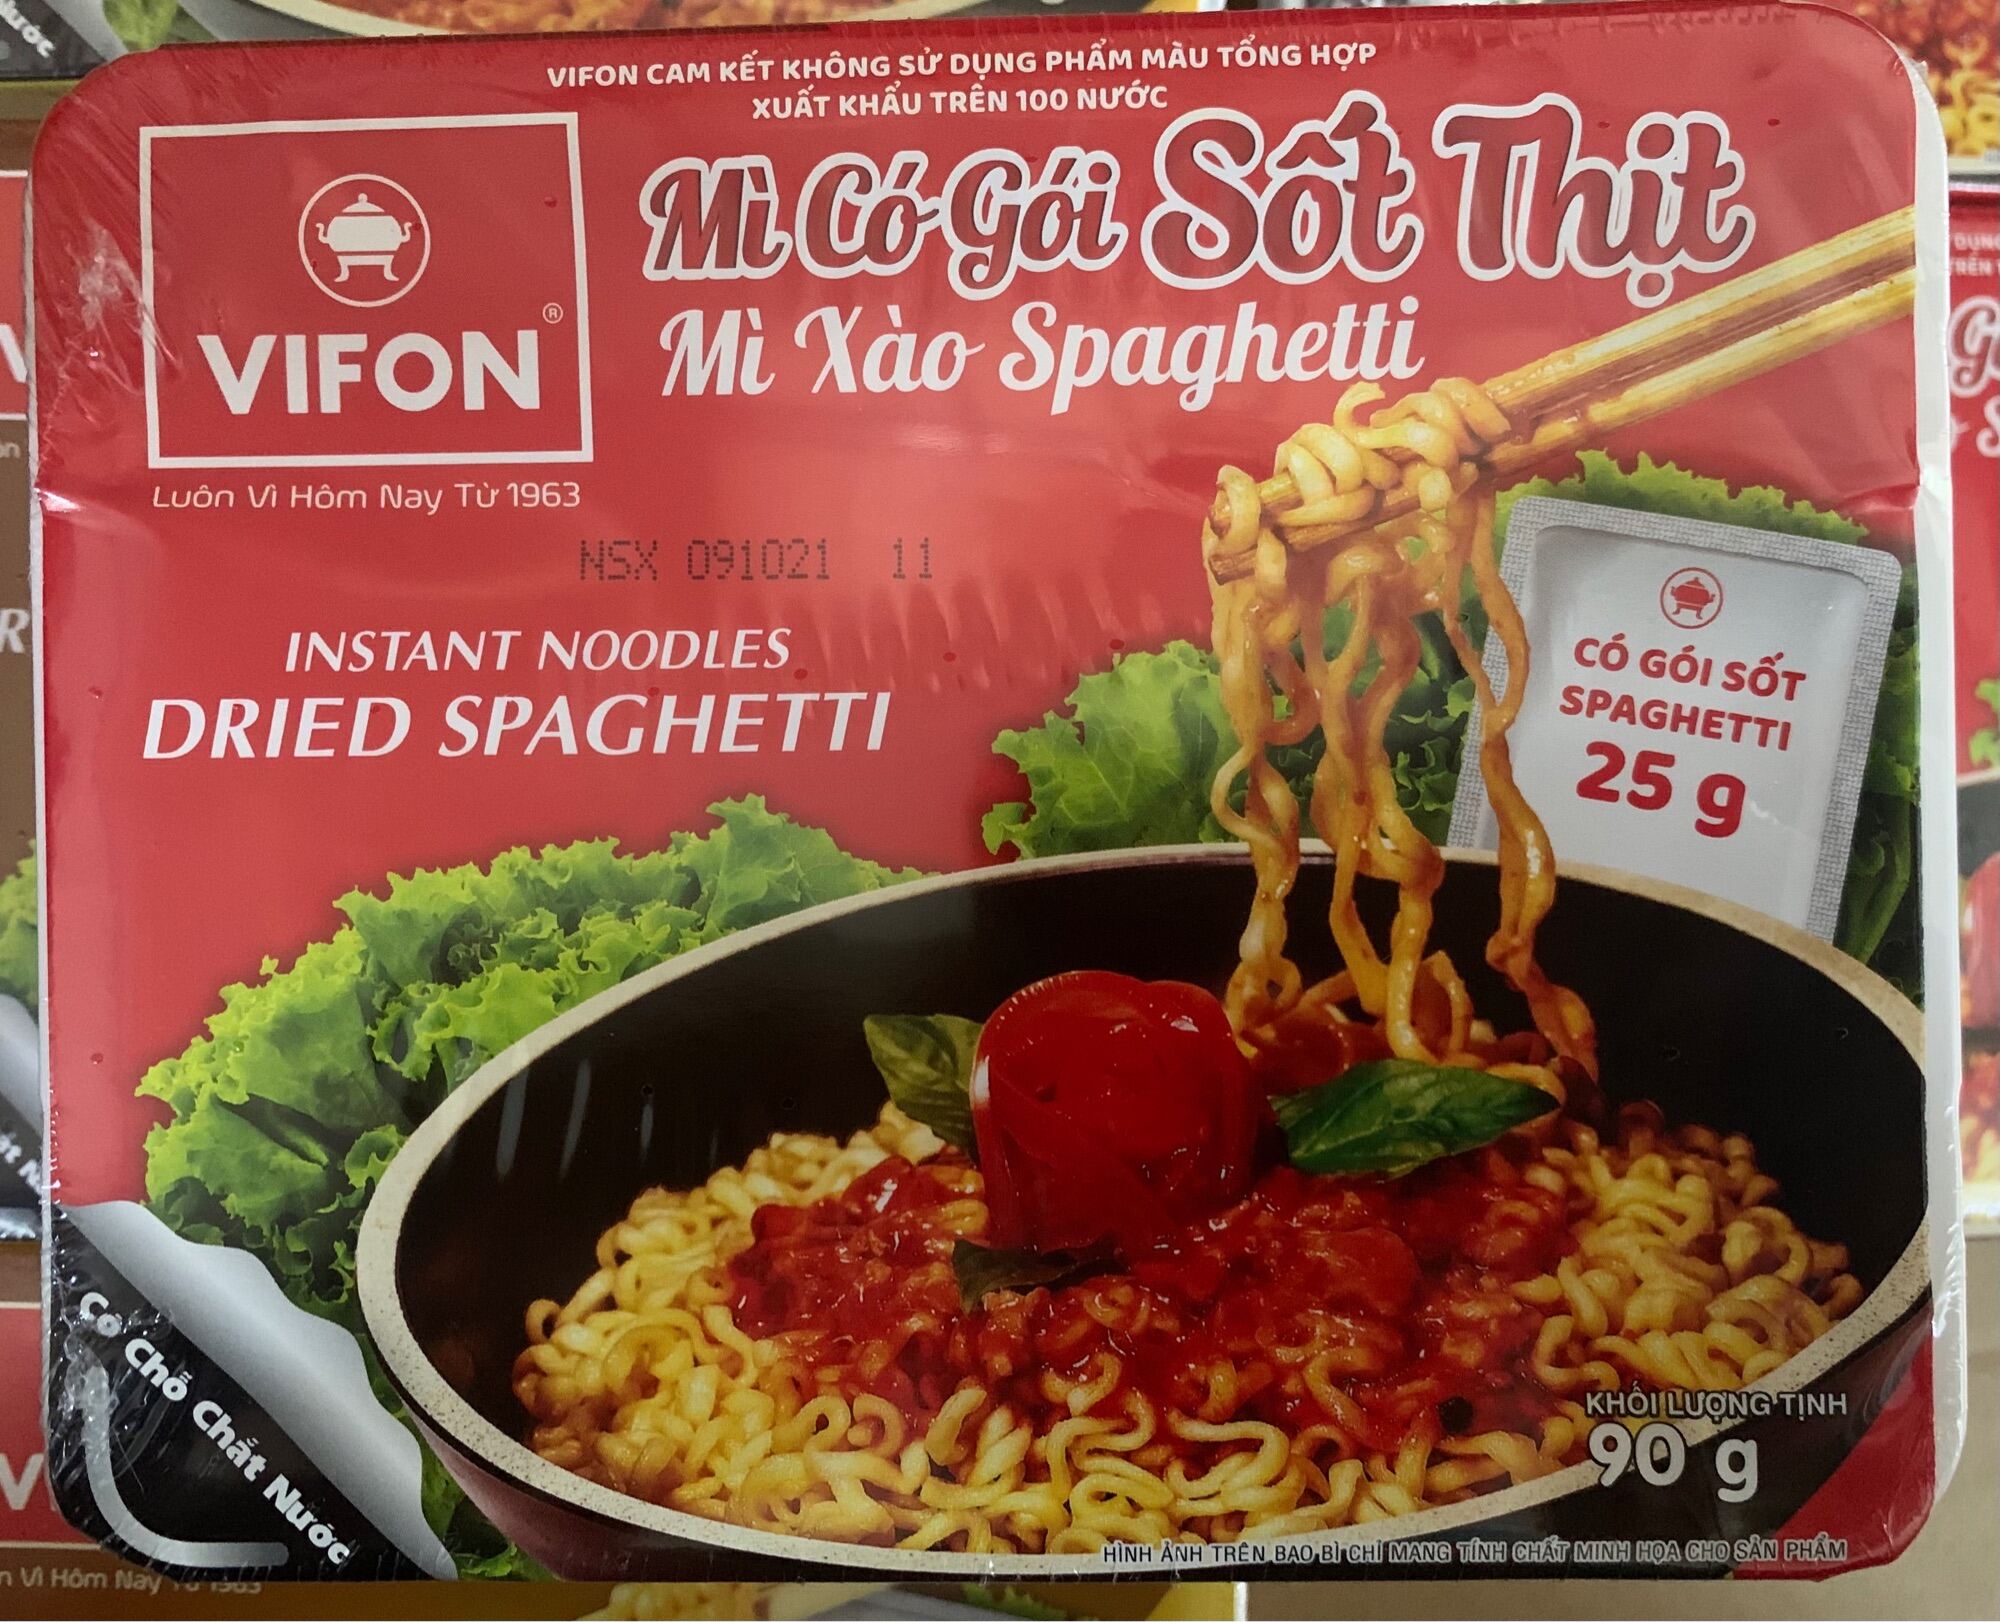 Mì Khay Trộn khô Vifon , xào tương đen, Hải sản, Bò sa tế, Spaghetti